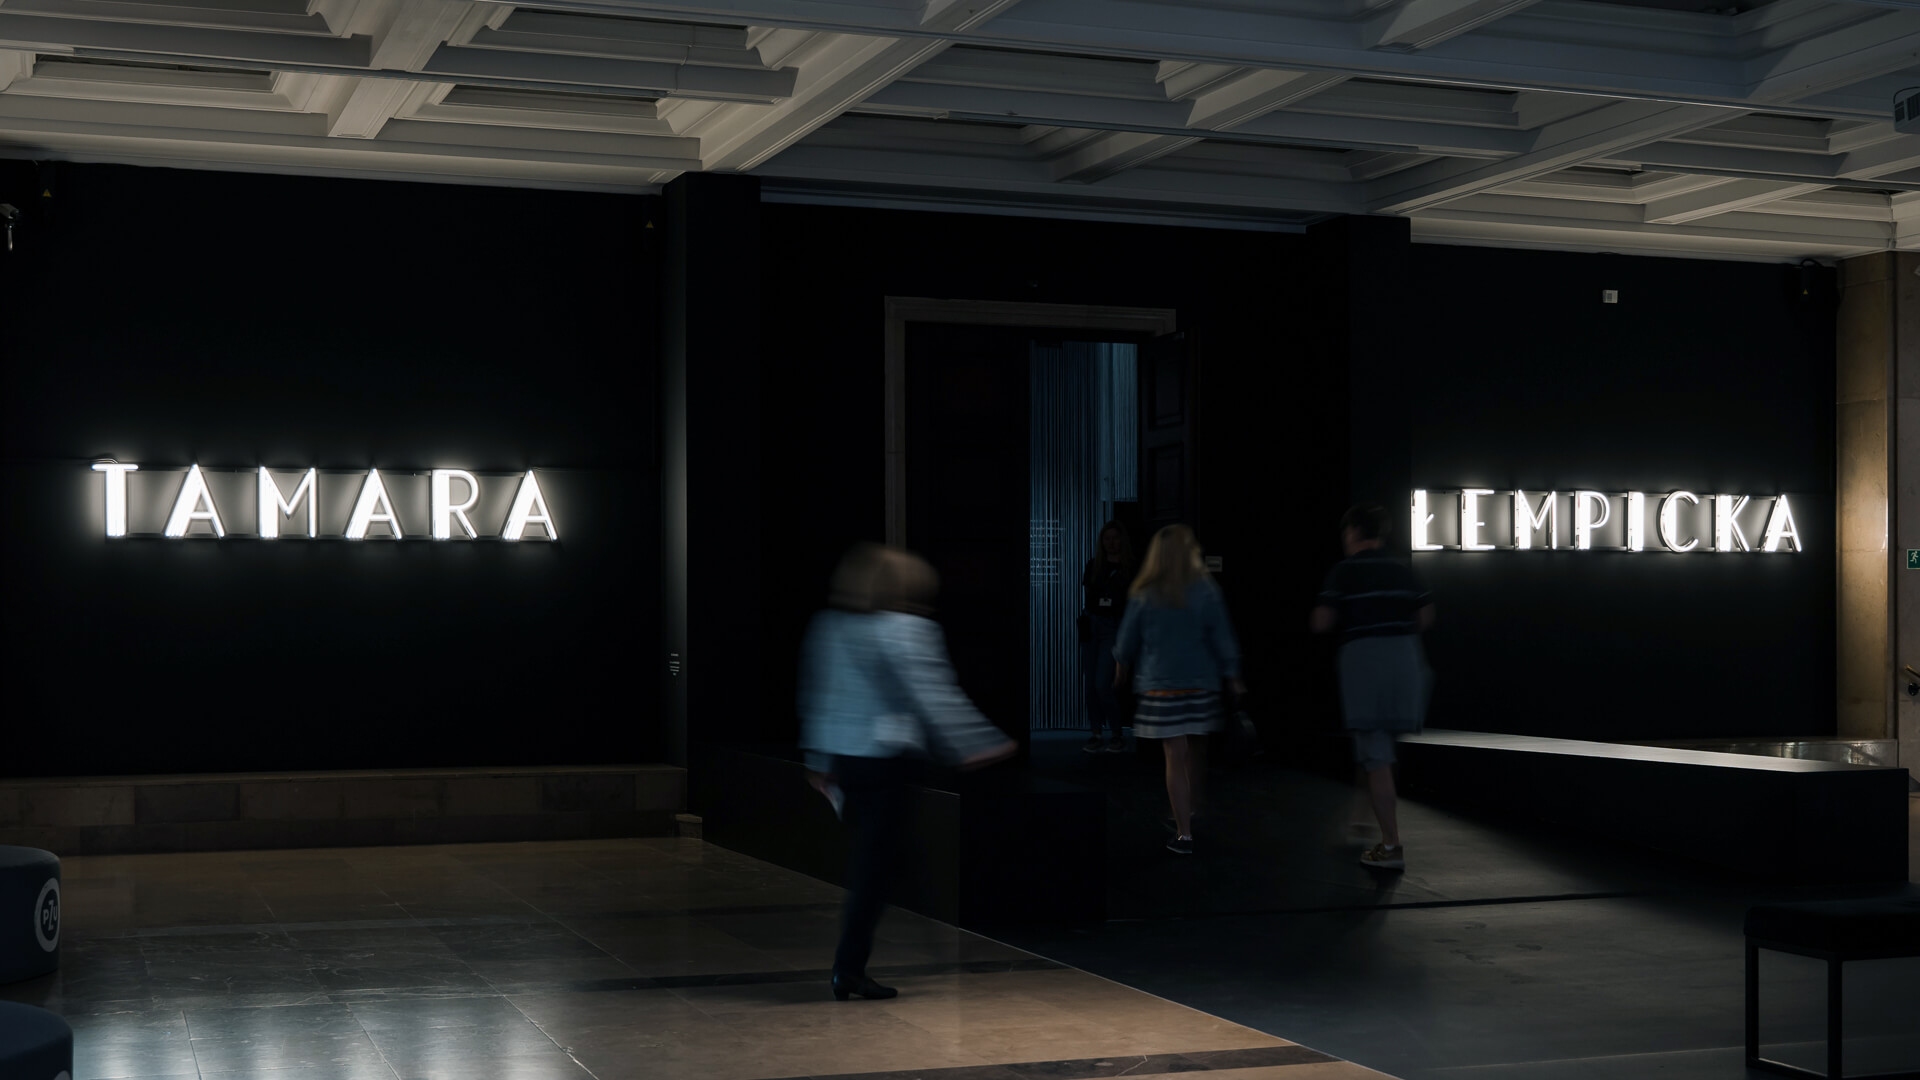 Neon Tamara Lempicka - Lettere al neon retrò in bianco